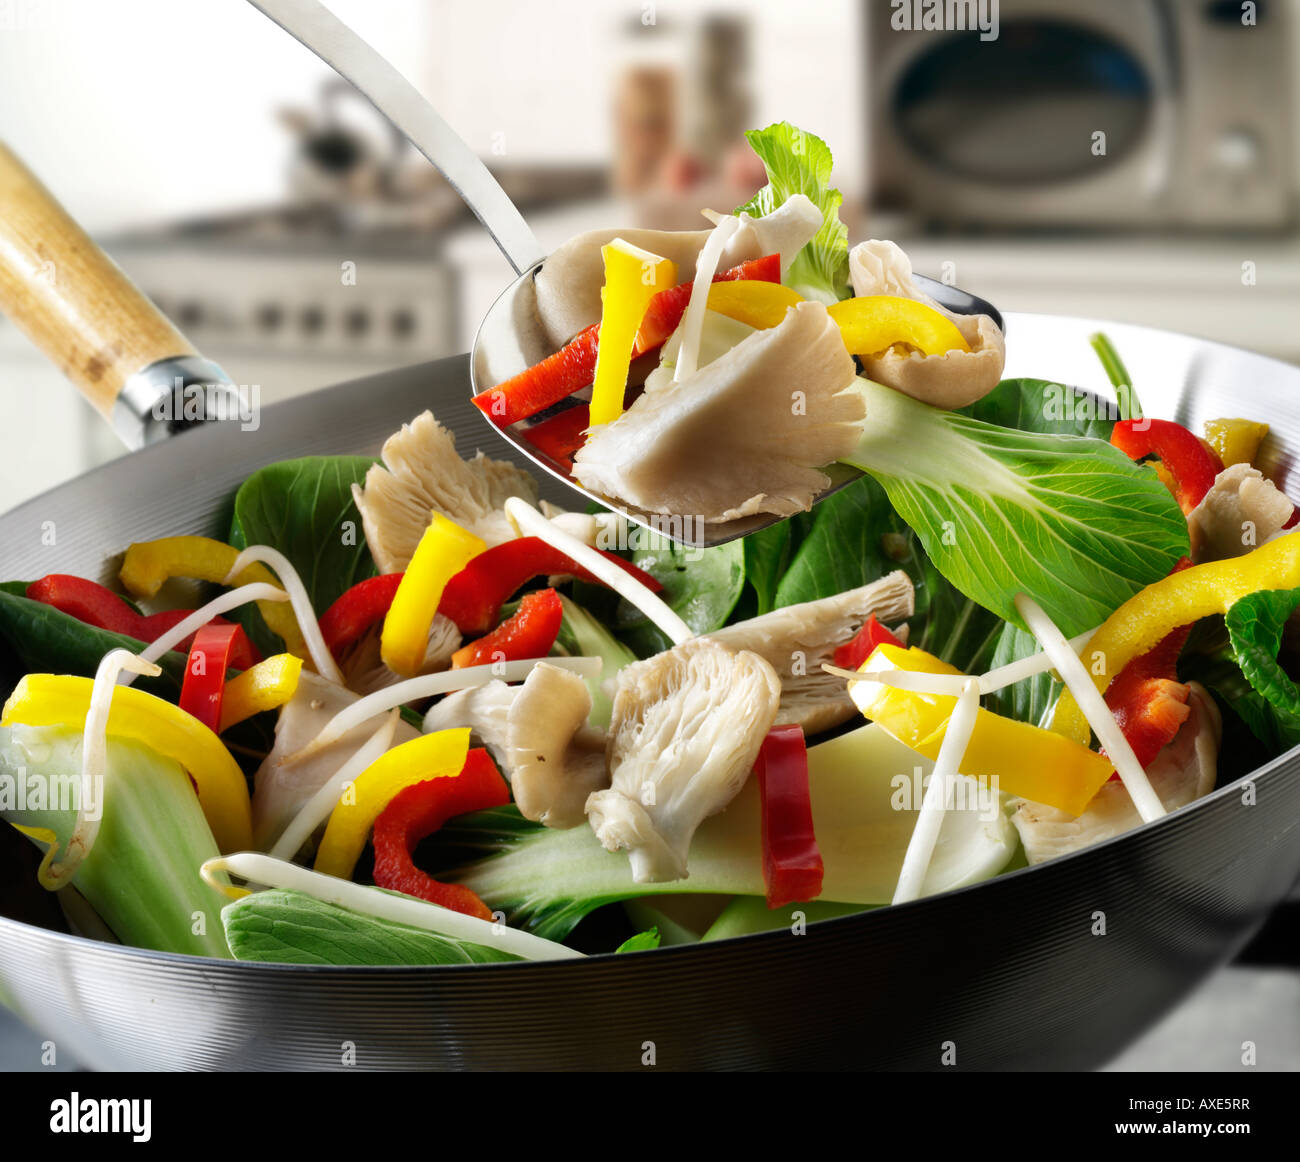 Gemüse unter Rühren braten im Wok gerührt, mit Paprika, Pak Choi,  Austernpilzen und Gemüse Stockfotografie - Alamy